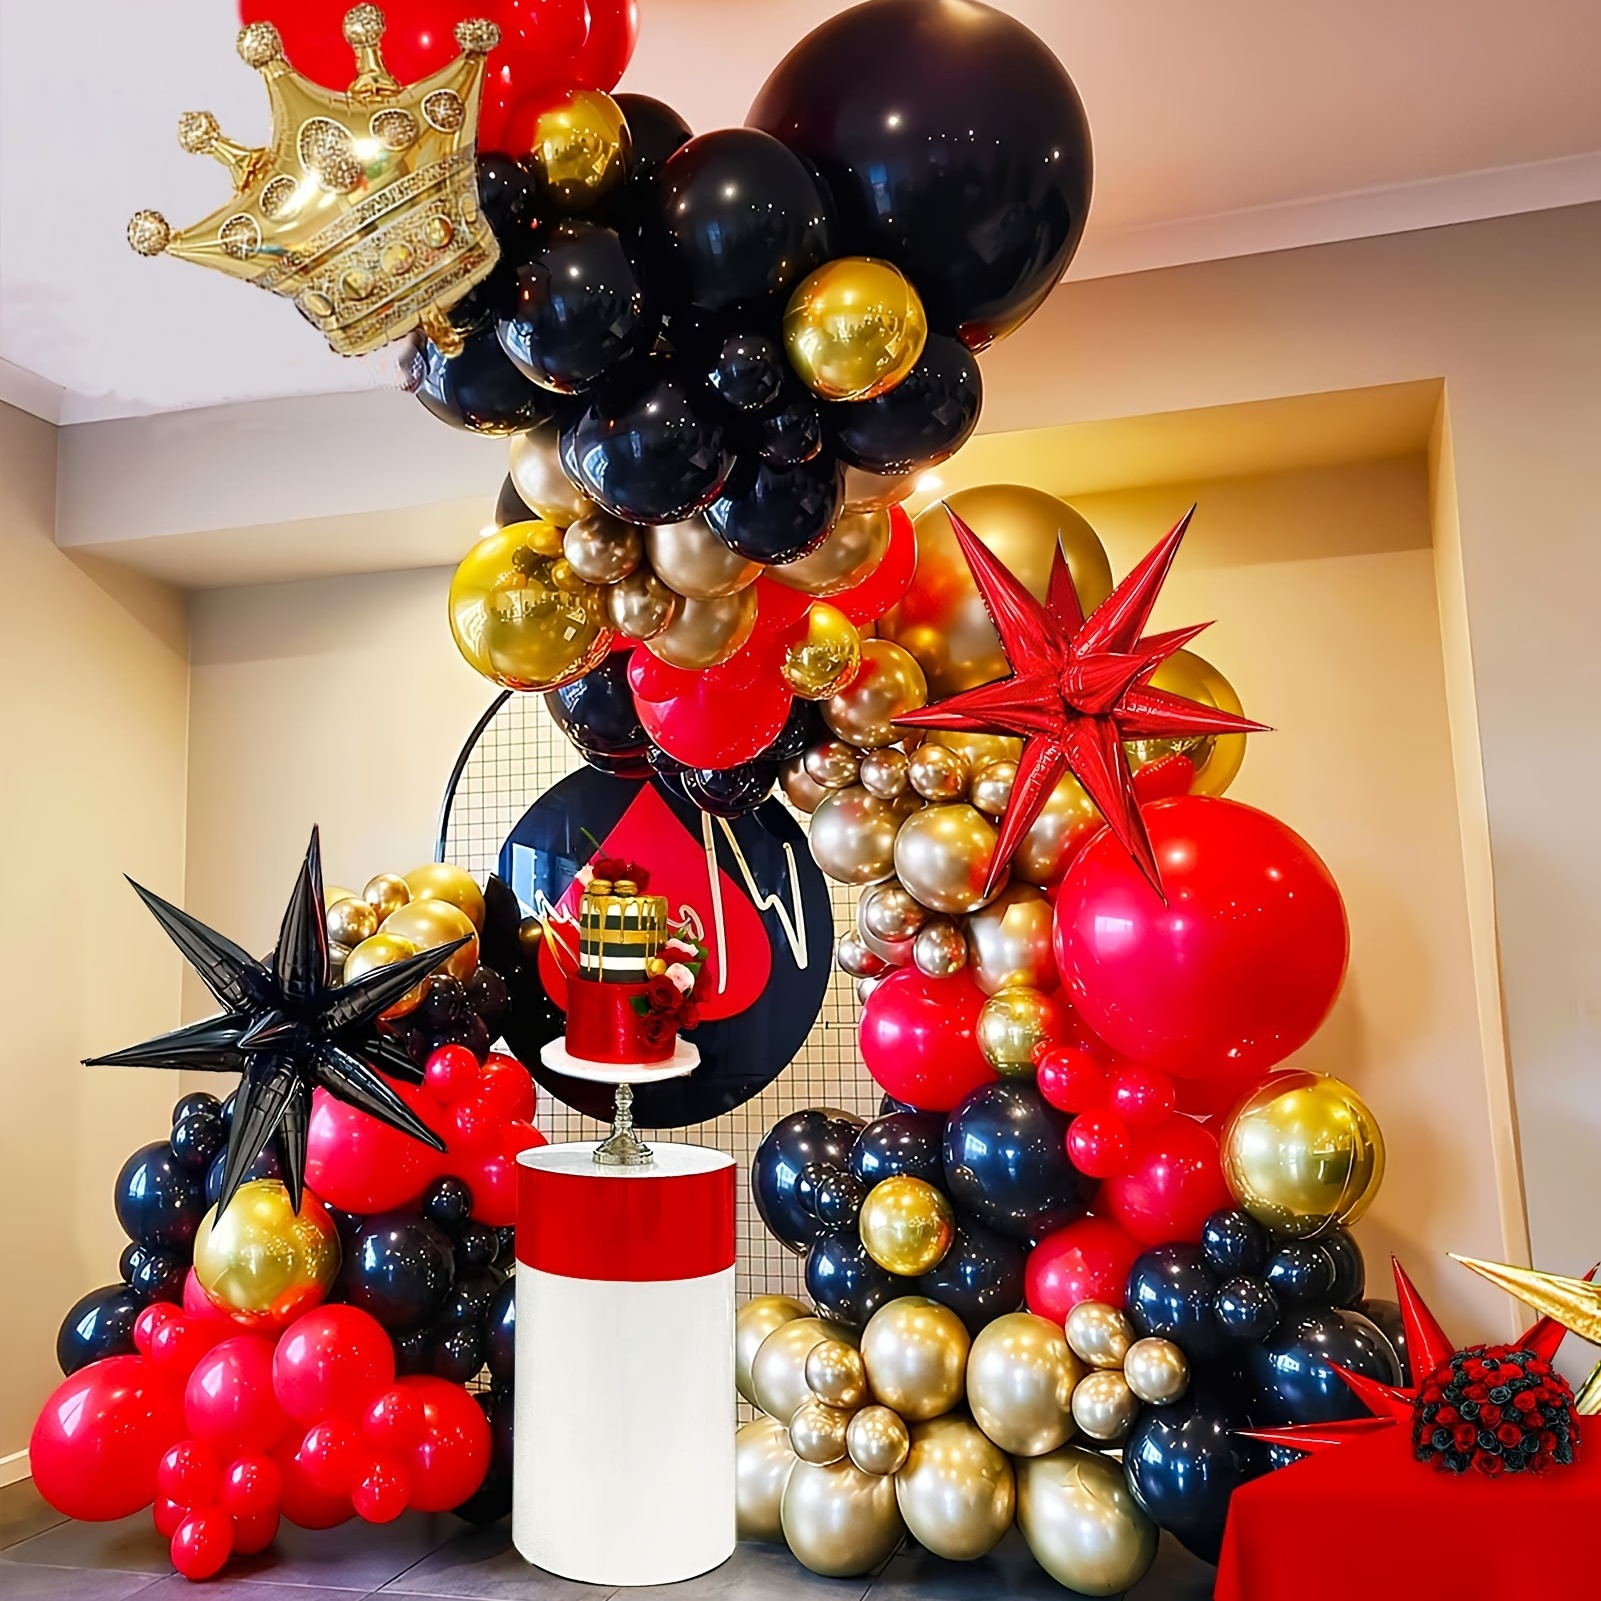 100 globos rojos, globos de látex rojo de 12 pulgadas, calidad de helio,  para fiestas de cumpleaños, bodas, aniversarios, Navidad o decoración de